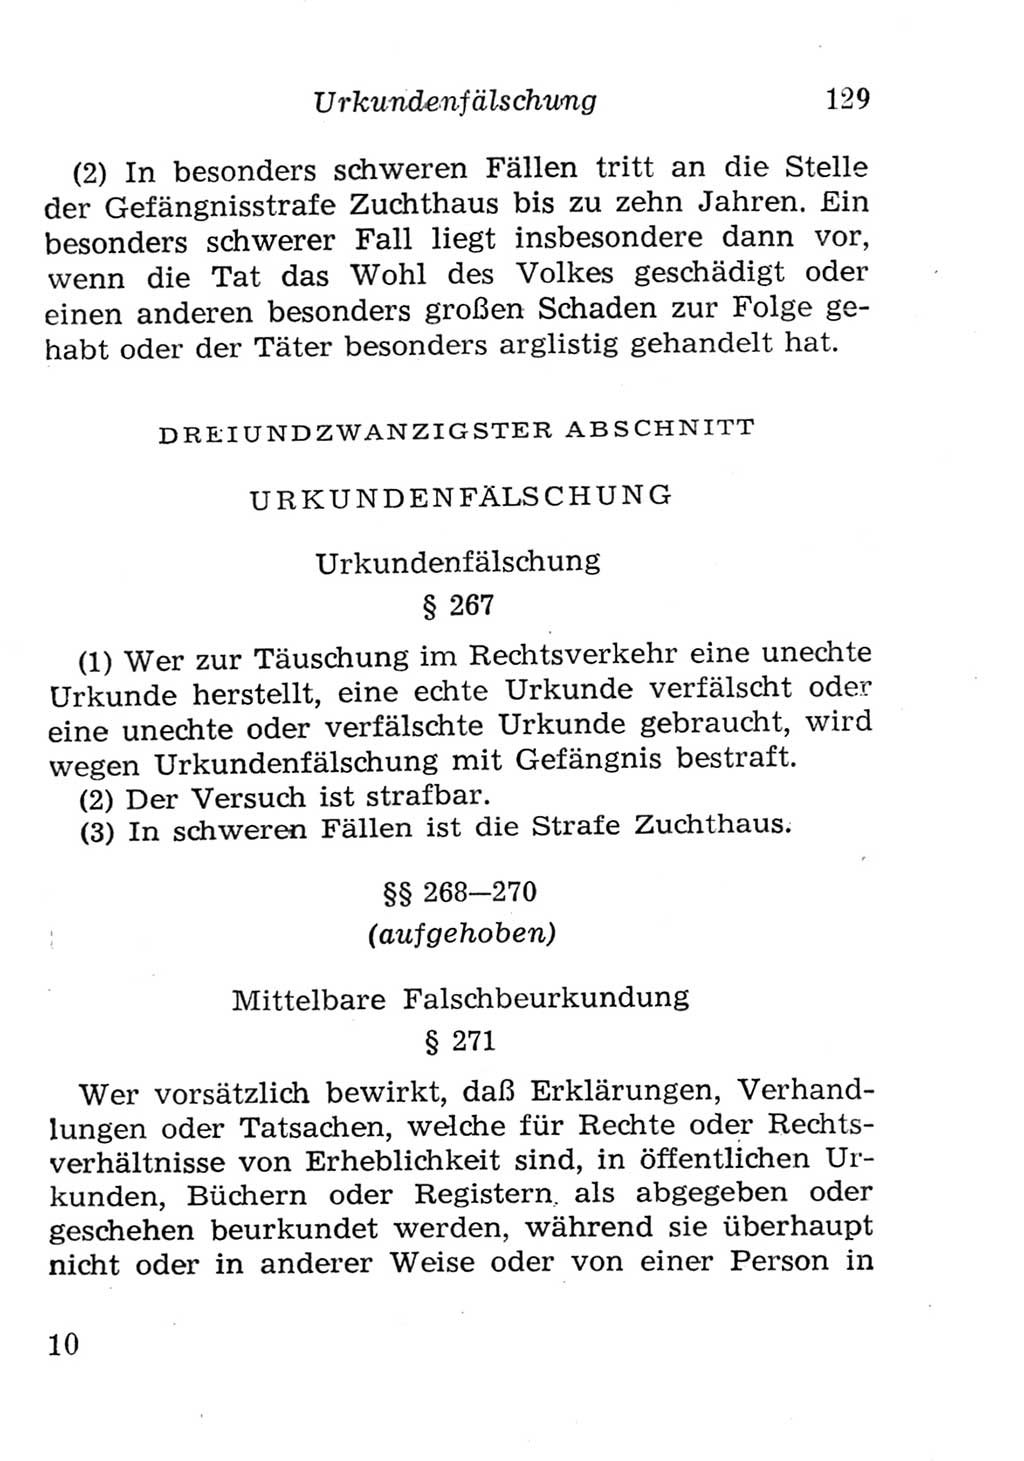 Strafgesetzbuch (StGB) und andere Strafgesetze [Deutsche Demokratische Republik (DDR)] 1957, Seite 129 (StGB Strafges. DDR 1957, S. 129)